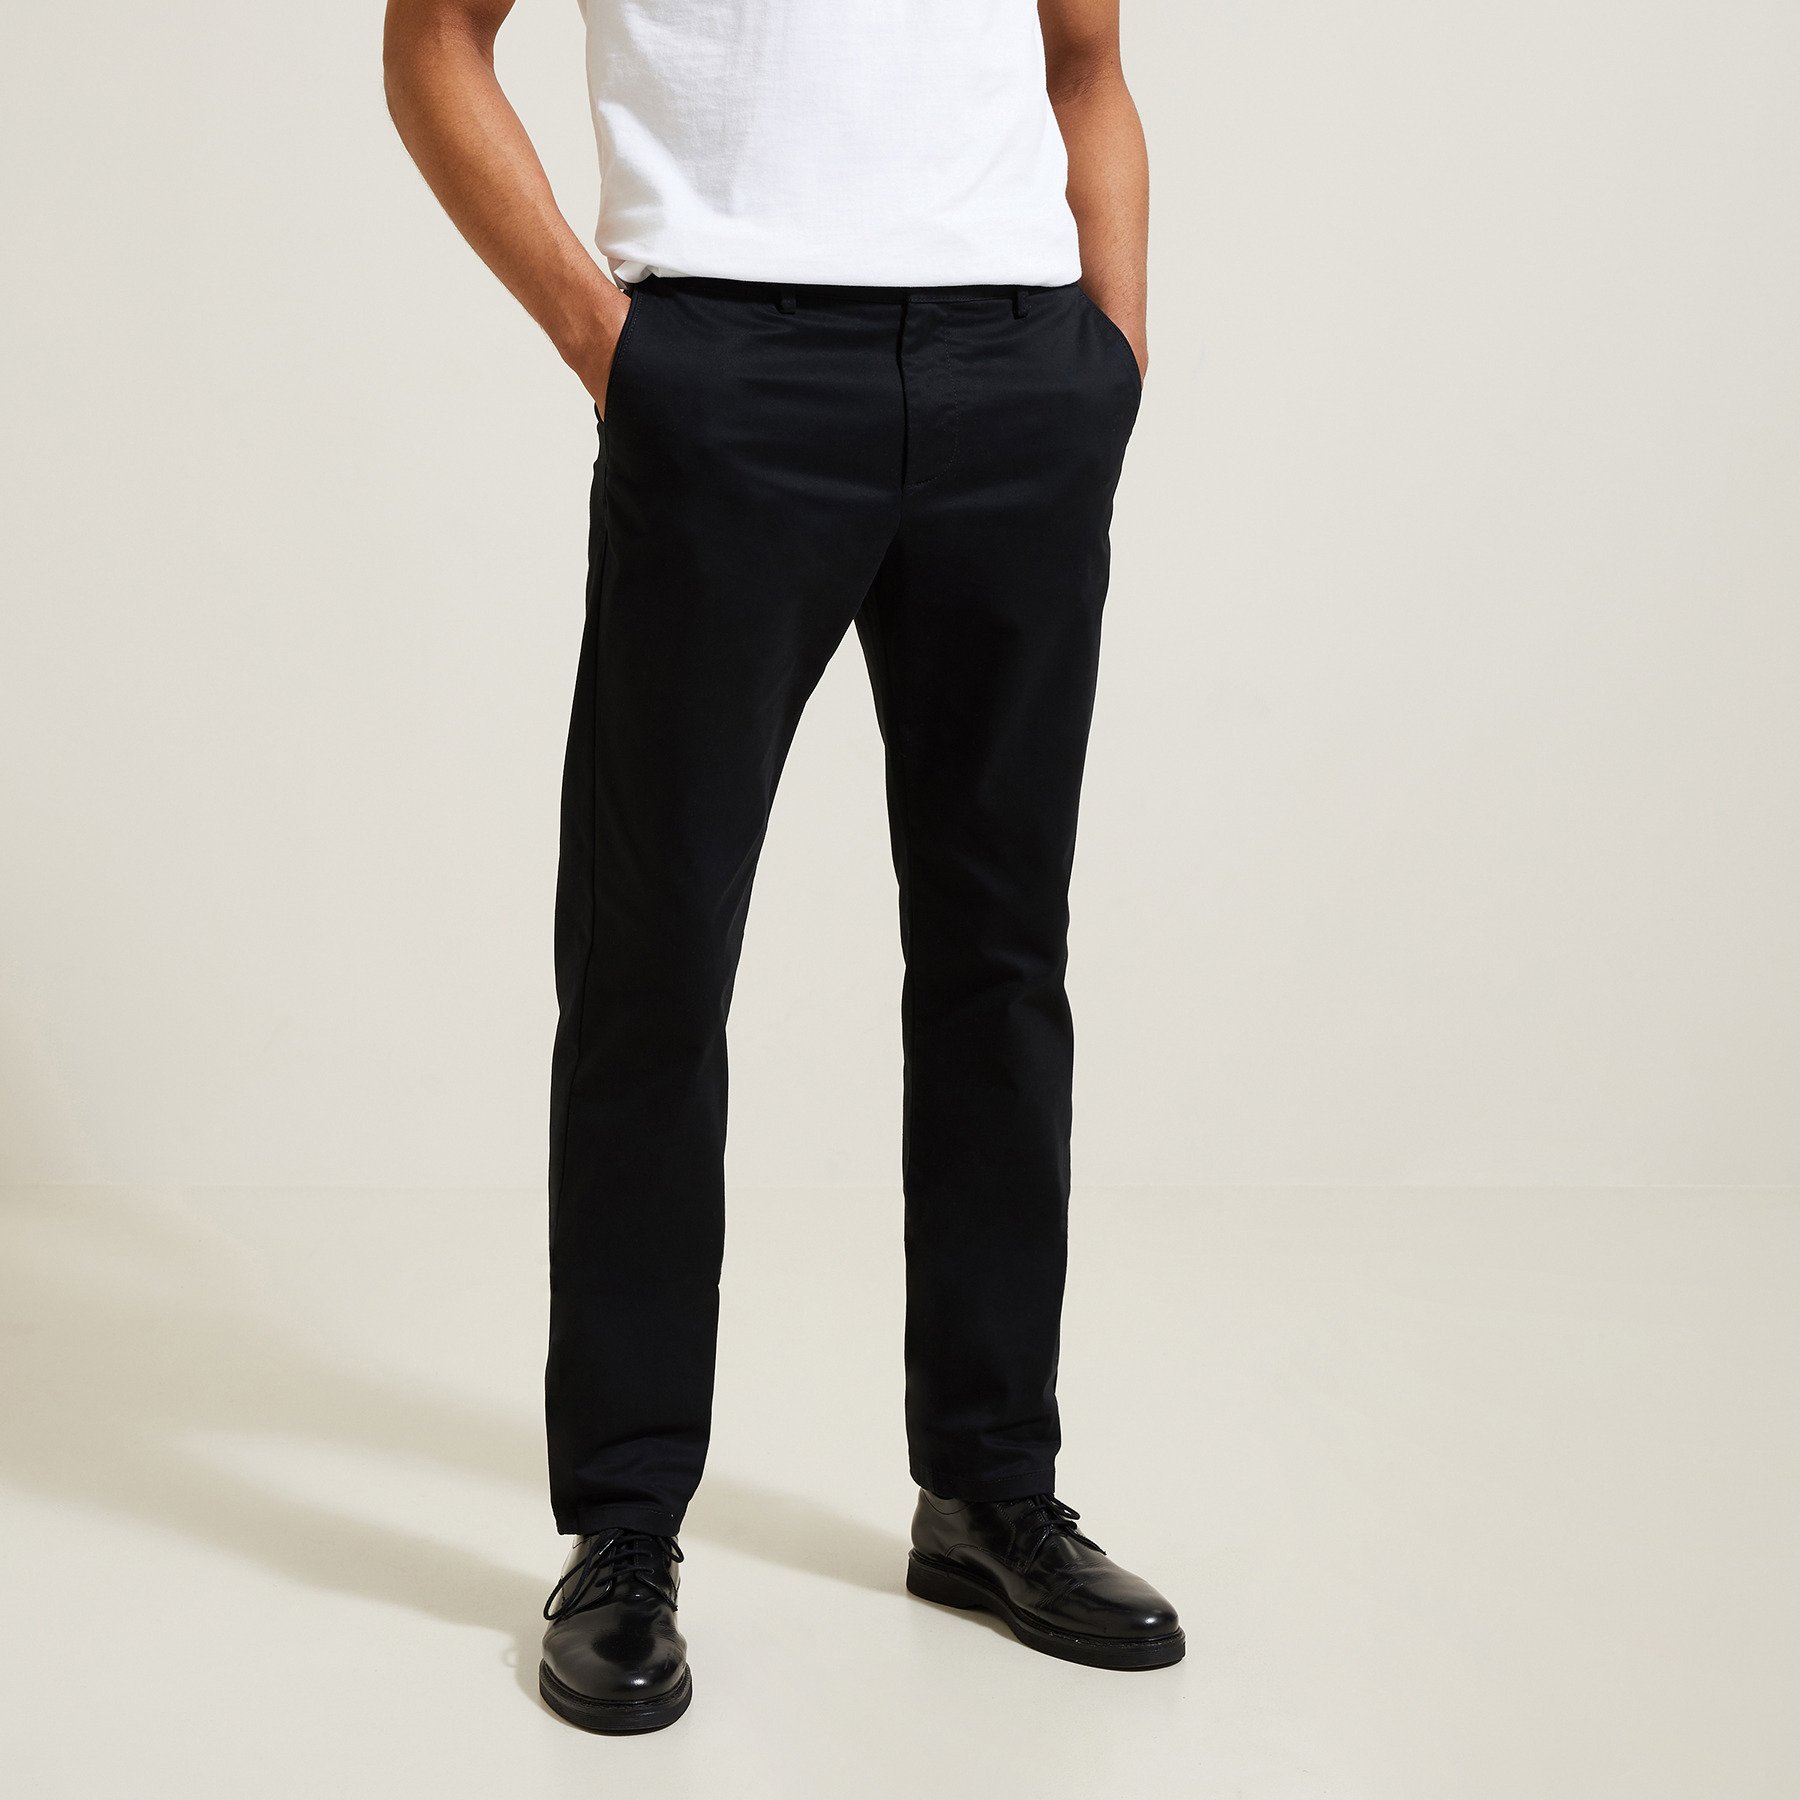 Pantalon chino regular "le parfait by JULES" Noir 38 98% Coton, 2% Elasthanne Homme